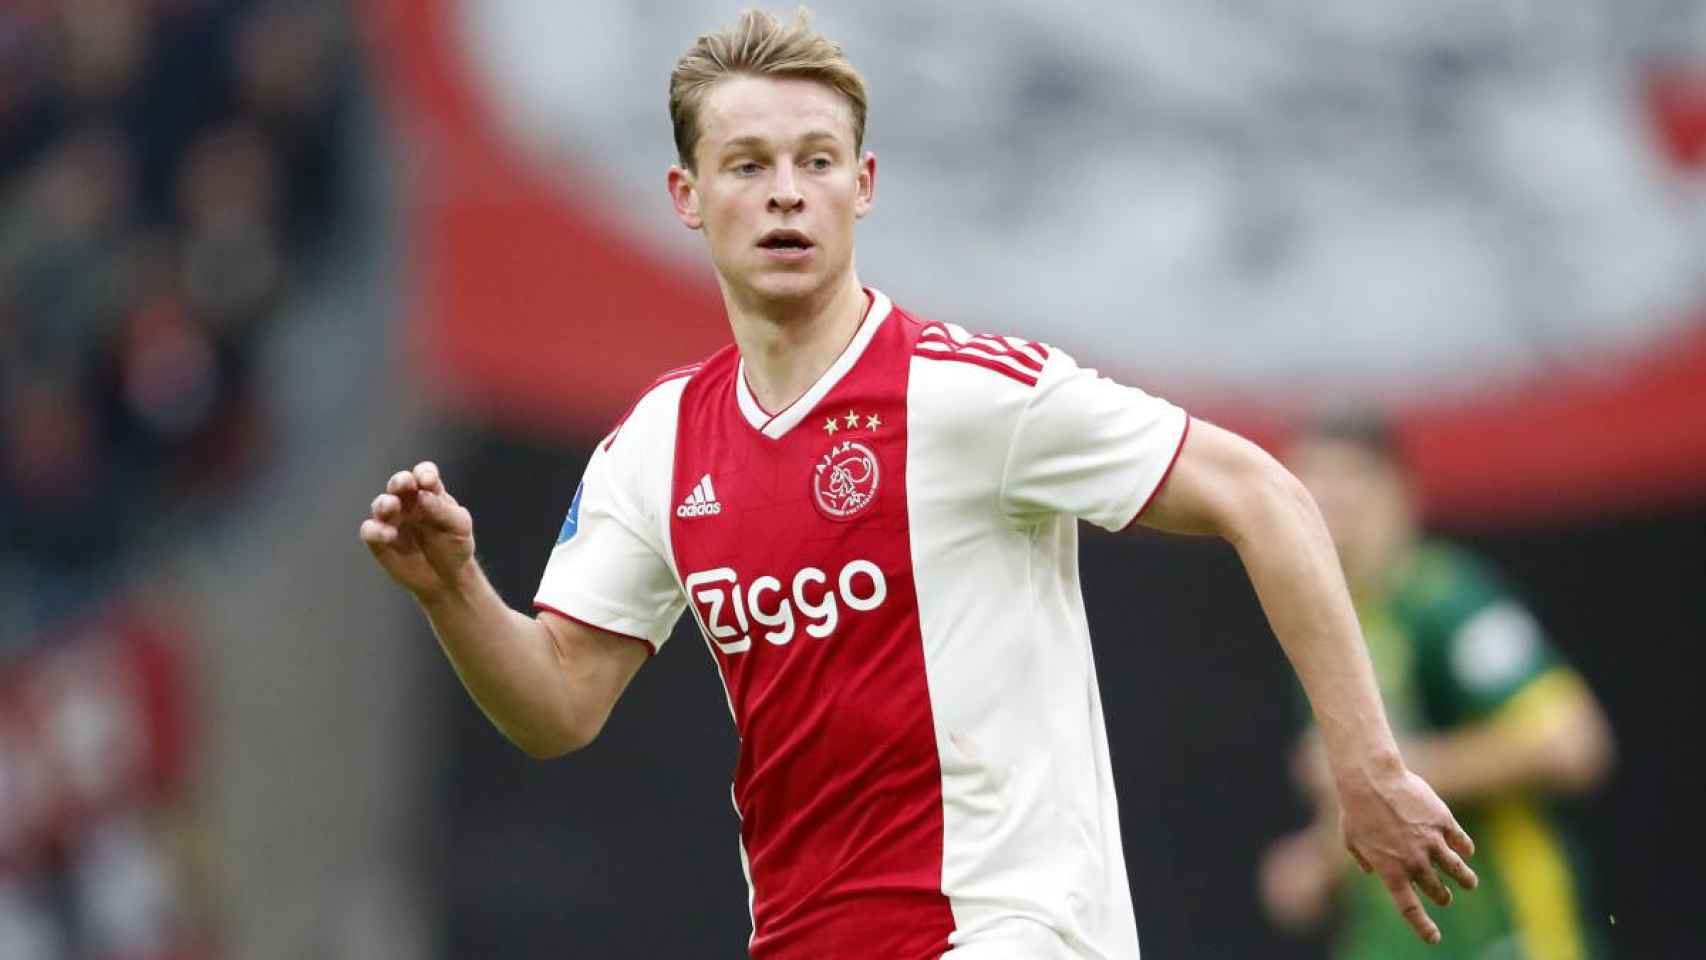 De Jong jugando con el Ajax de Amsterdam en una imagen de archivo / EFE